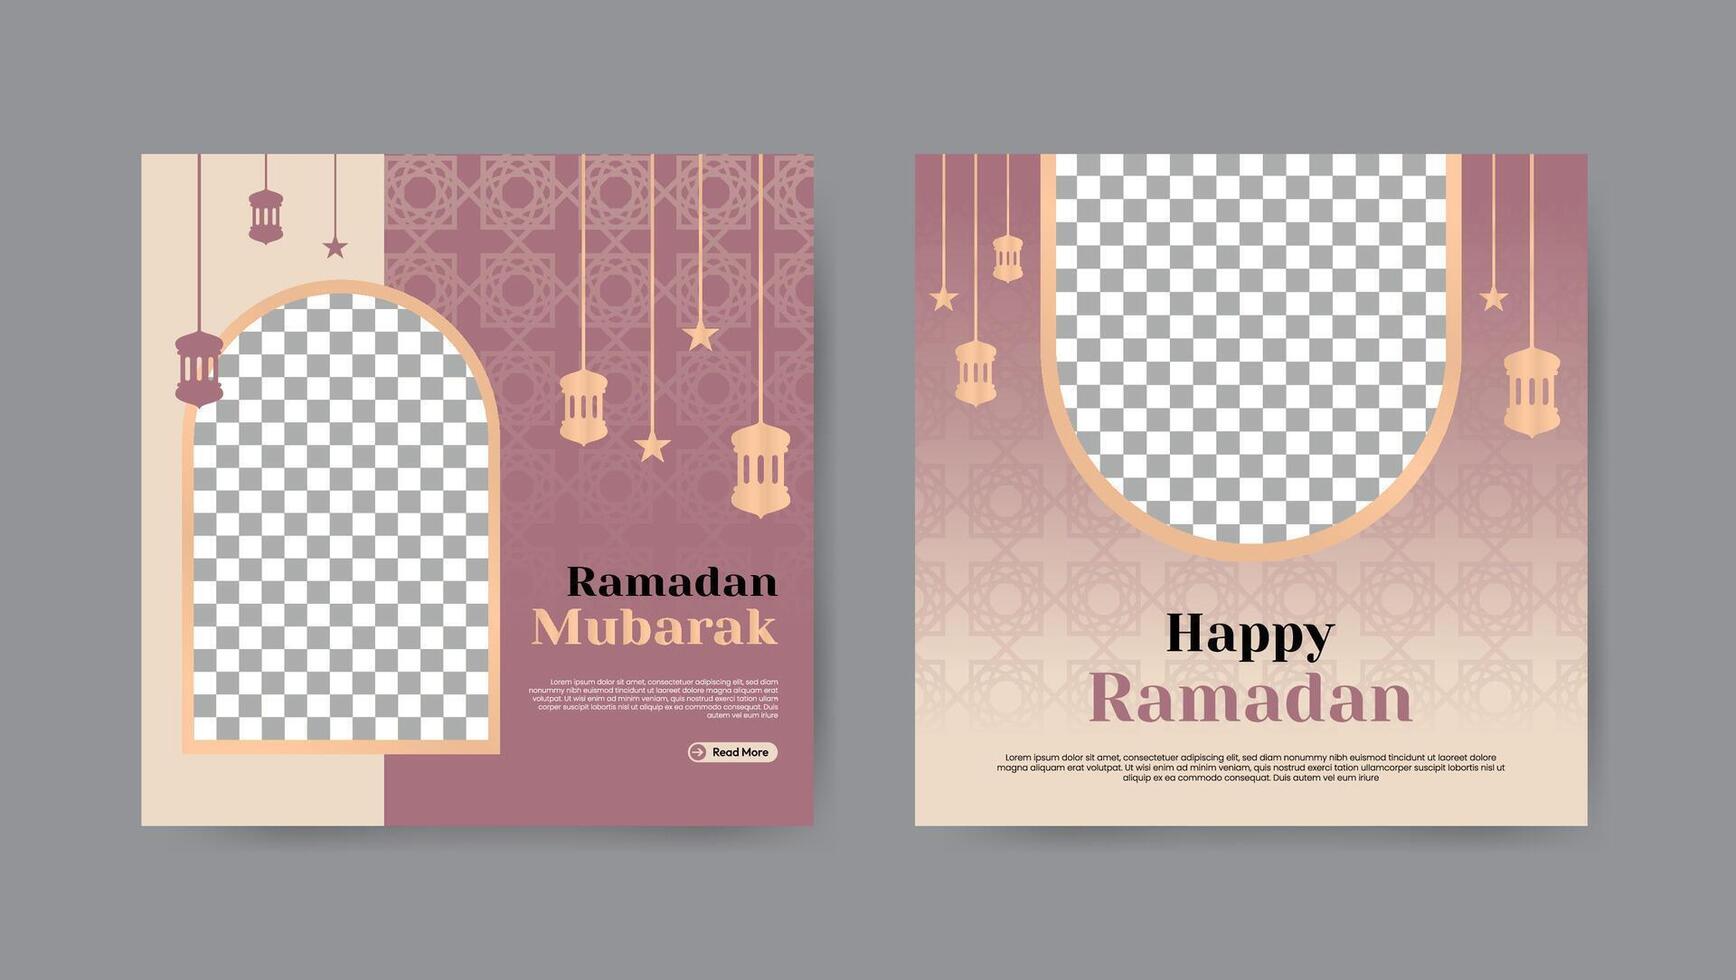 verzameling van modieus Ramadan kareem sociaal media post Sjablonen. plein banier ontwerp achtergrond. vector